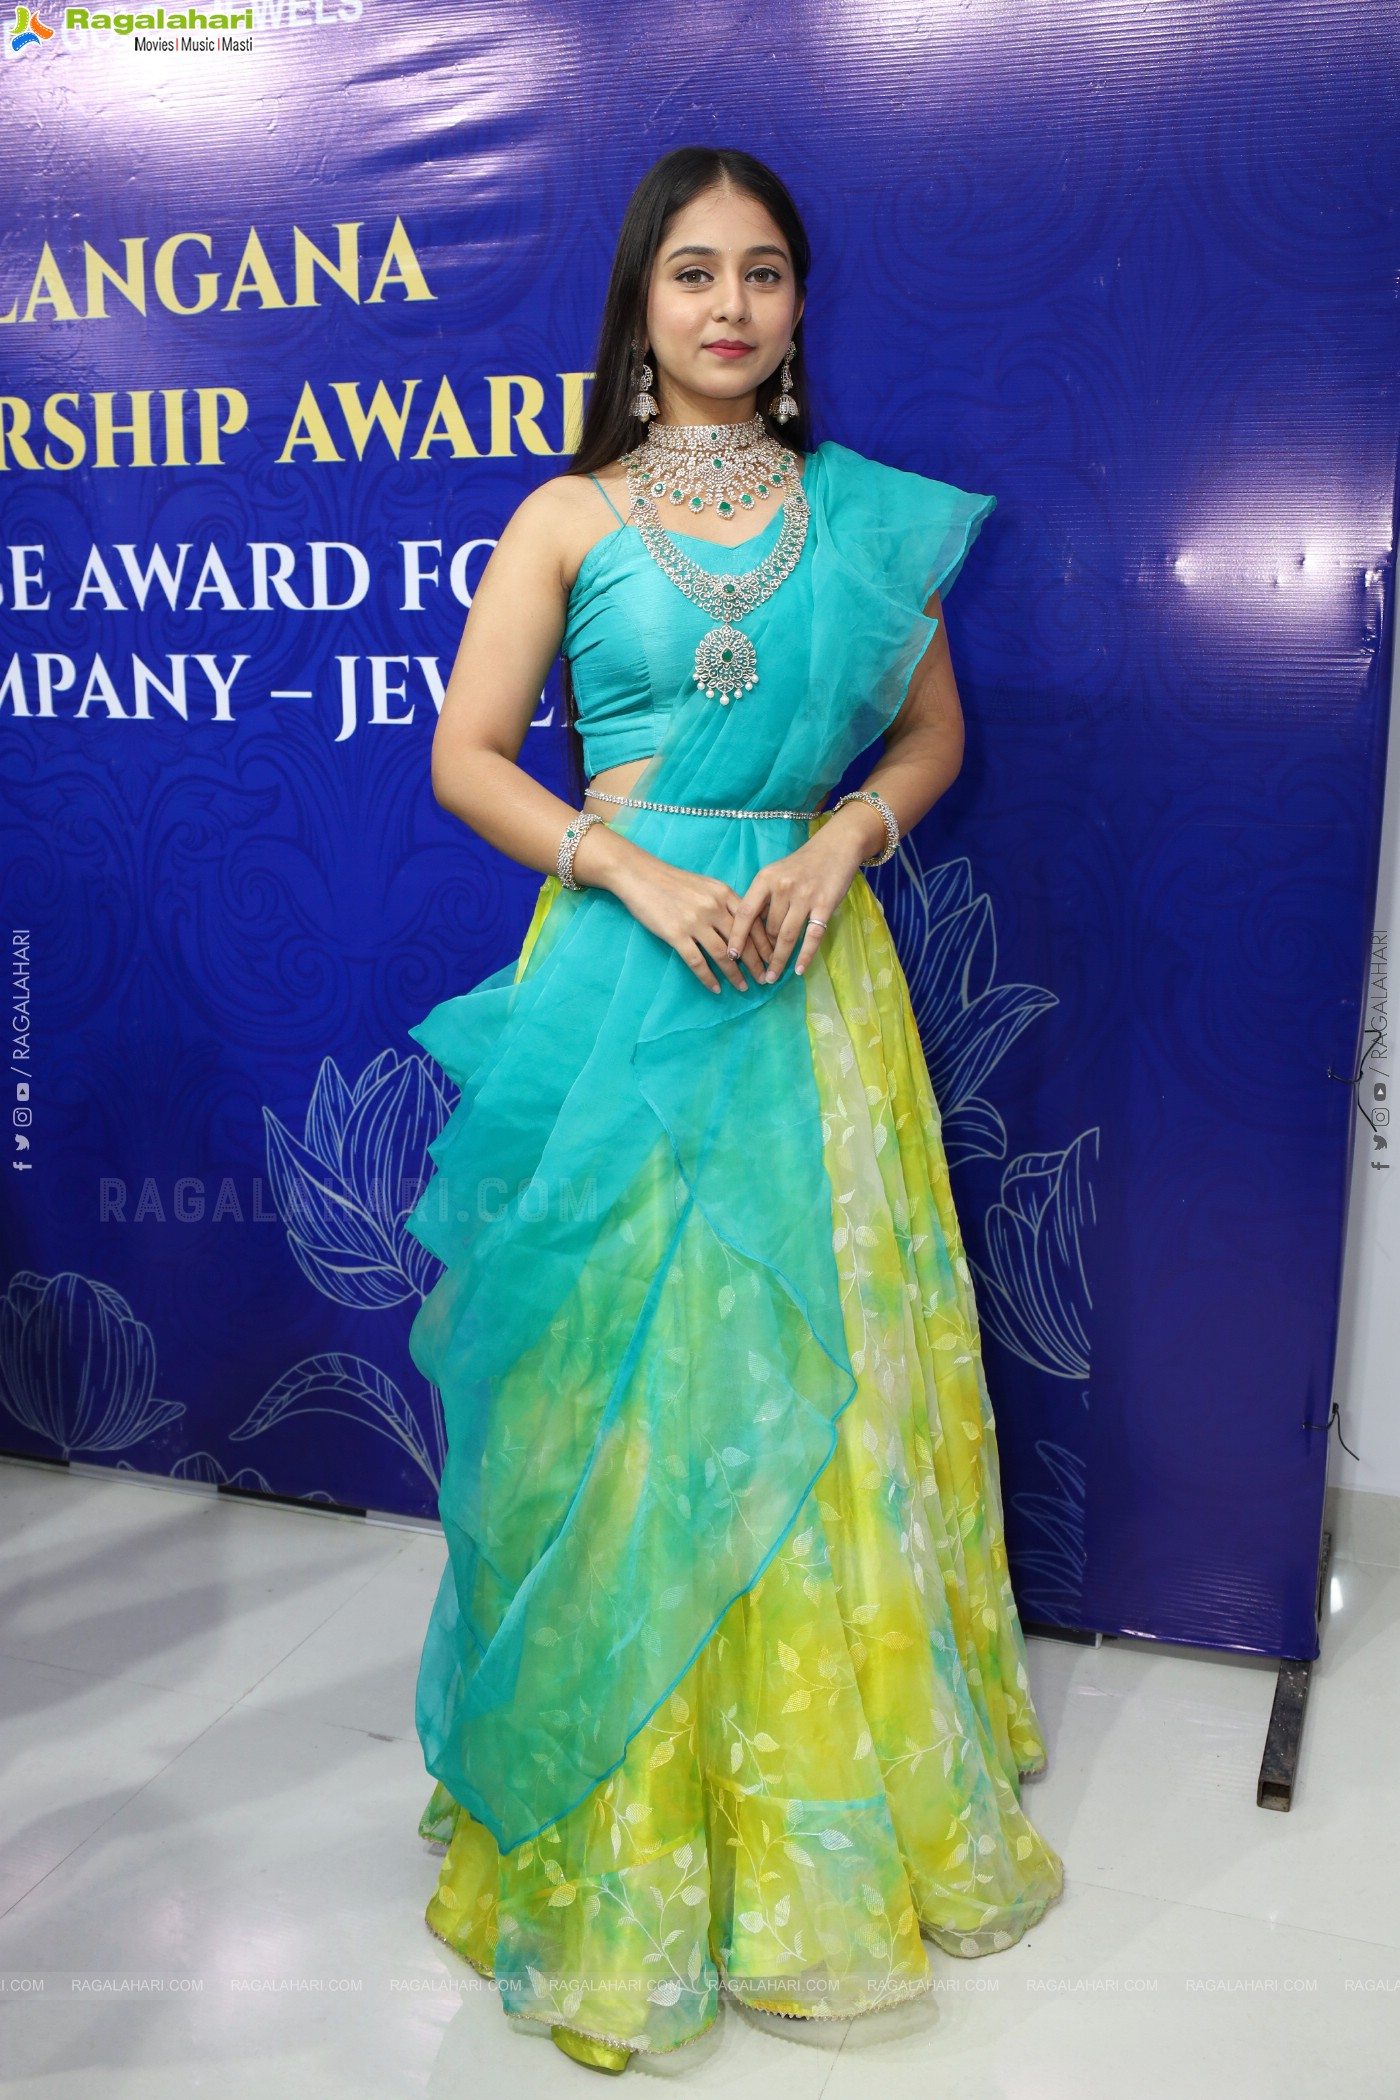 Krishna Pearls & Jewellers Awarded Telengana Leadership Award